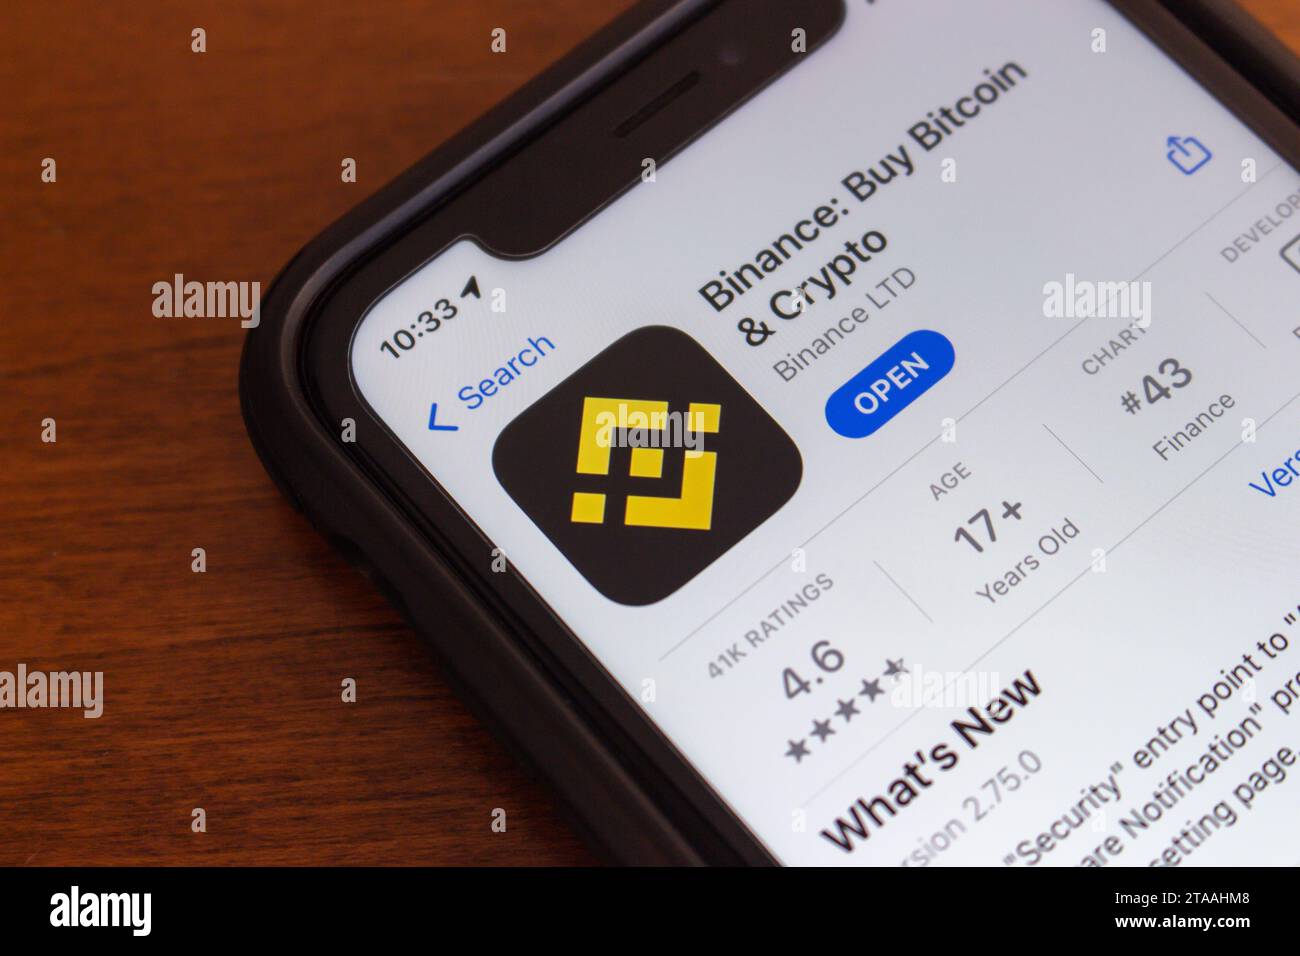 Application Binance vue dans l'App Store dans l'écran de l'iPhone. Binance est la plateforme d’échange de crypto-monnaie basée sur la blockchain, fondée par Changpeng Zhao en 2017 Banque D'Images